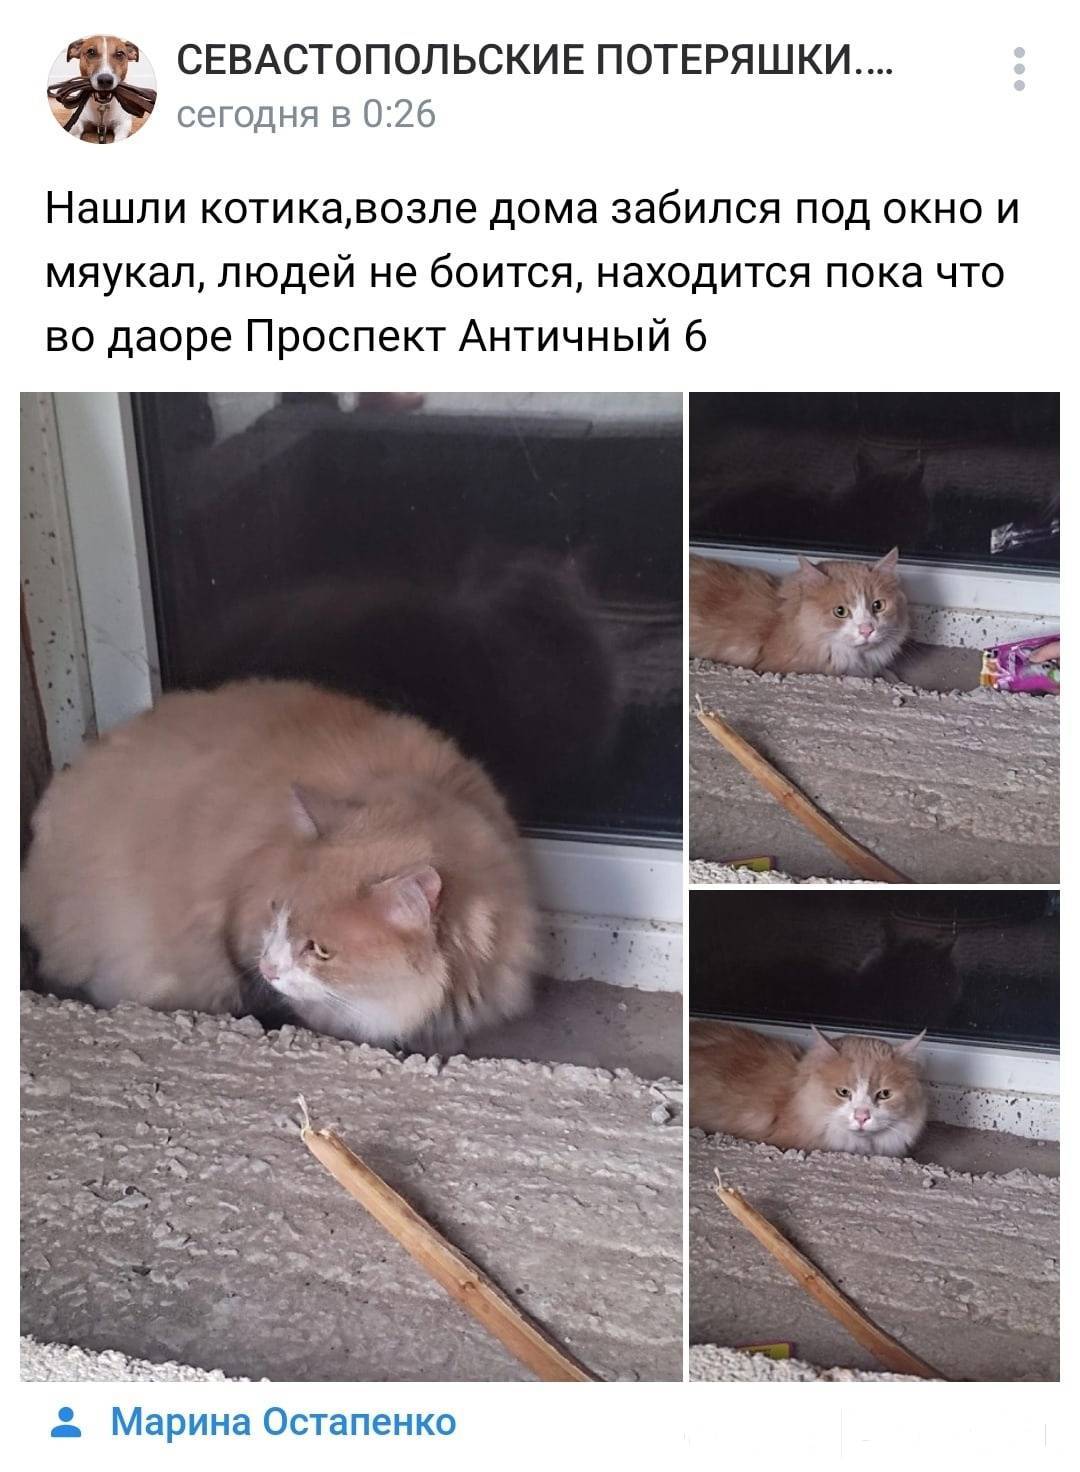 1. Севастополь. Найден кот. ht...